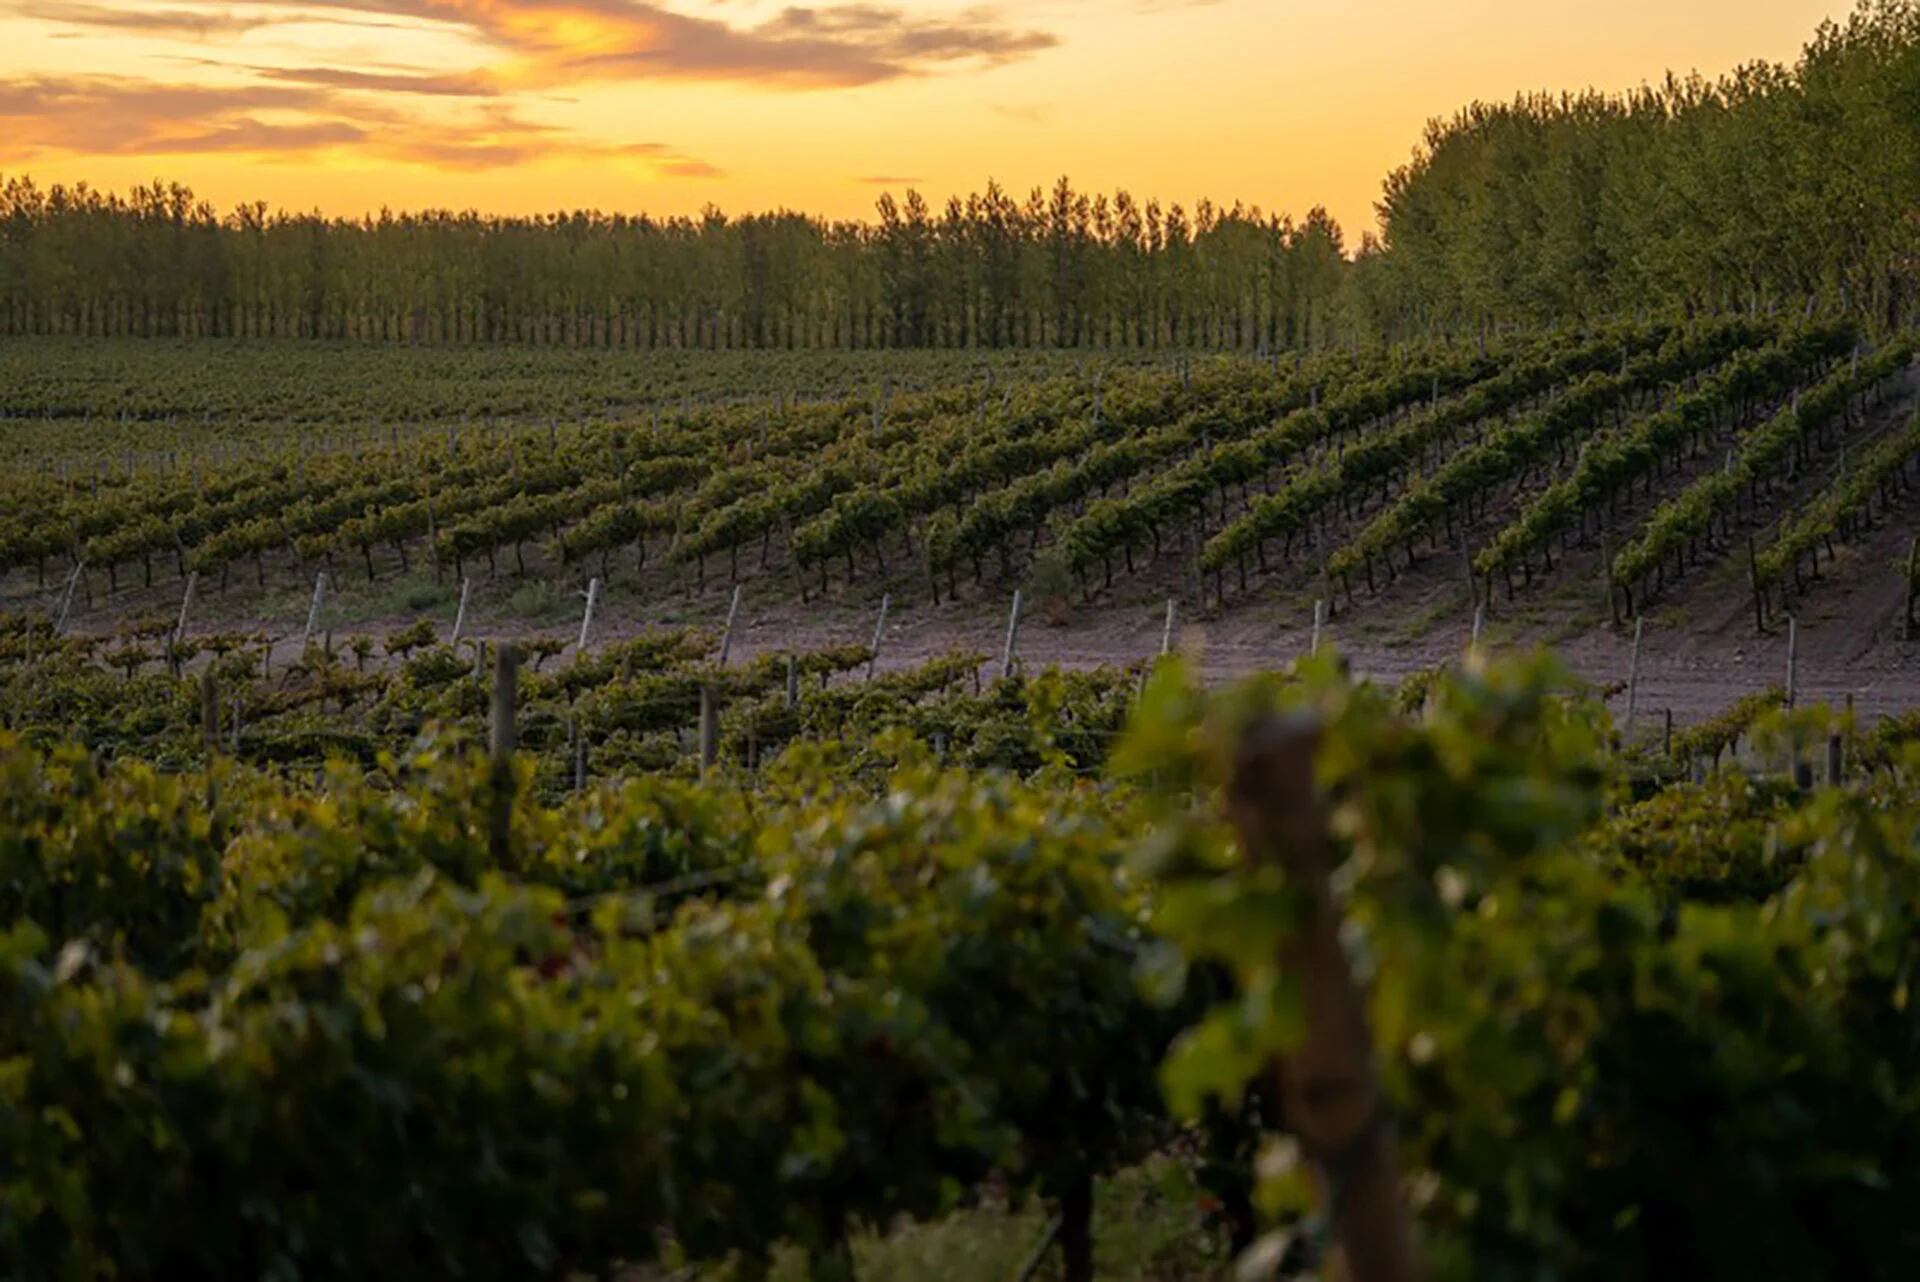 El manejo agroecológico, con balance y equilibrio, permite entender y saber todo lo que pasa alrededor de la vid, y así buscar mejorar la calidad de los vinos